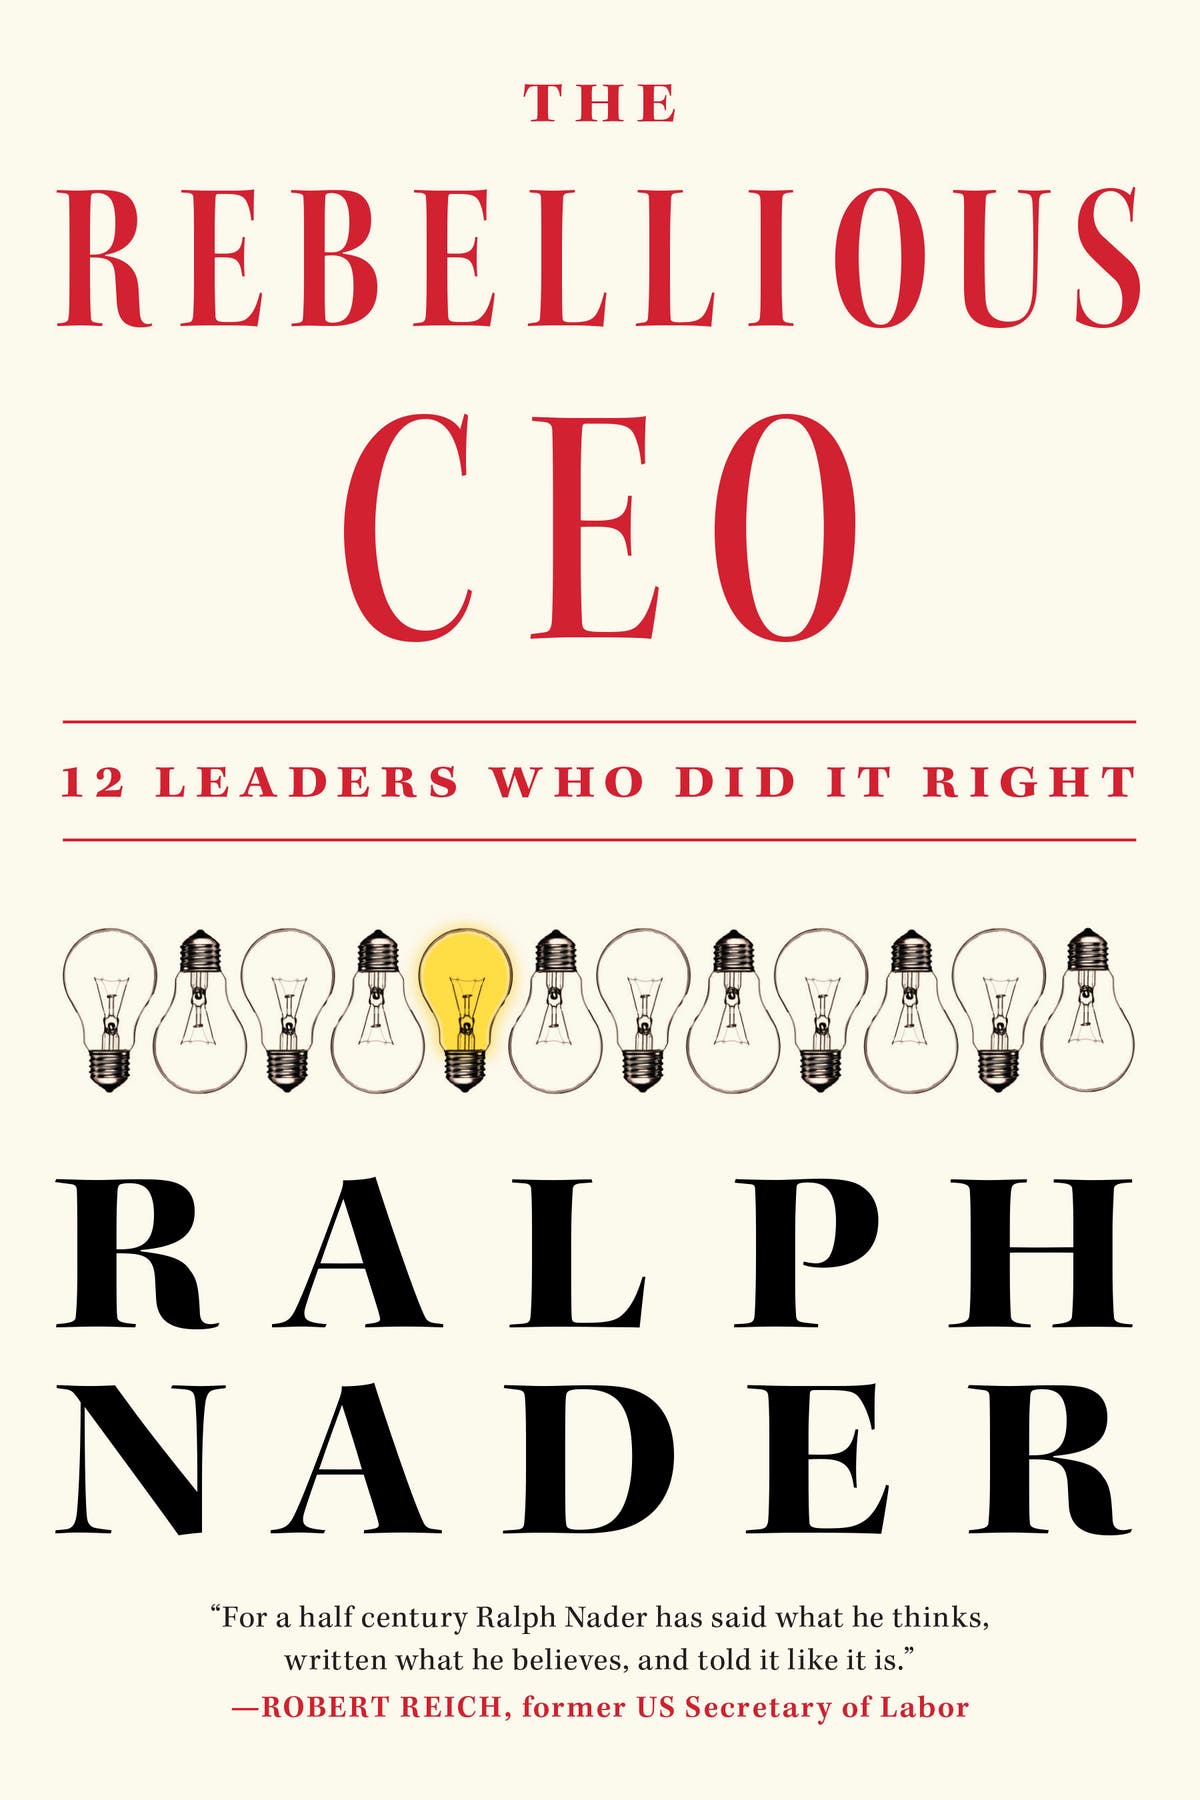 Преглед на книгата: Ралф Нейдър прави профили на корпоративни лидери, които вижда като модели за подражание в „The Rebellious CEO“